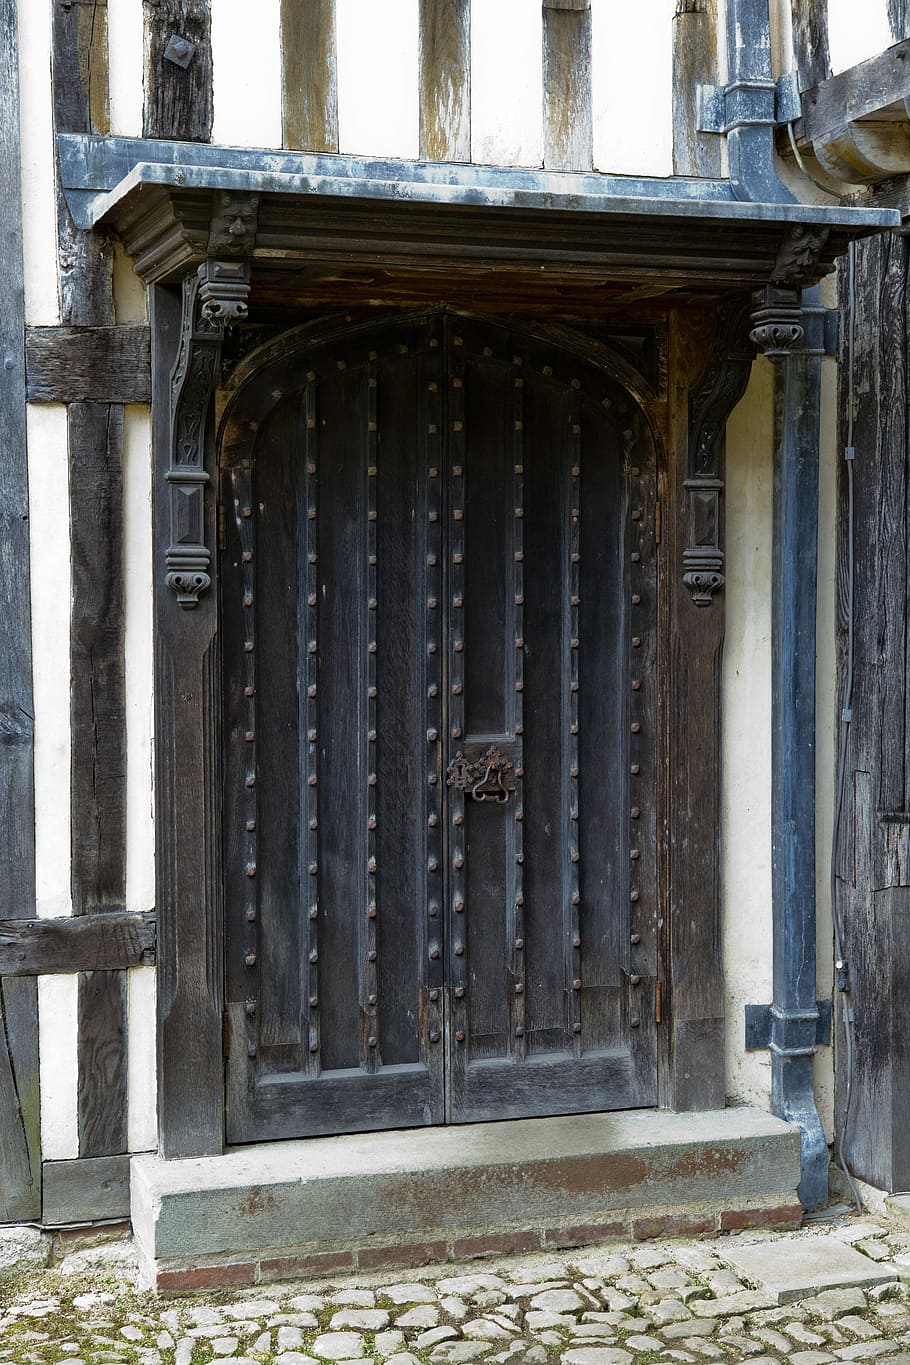 medieval, porta de carvalho, carvalho medieval, porta, bordadura, dossel, porta e bordadura de carvalho medieval, telhado de chumbo, tubulação de água da chuva, parede emoldurada em madeira